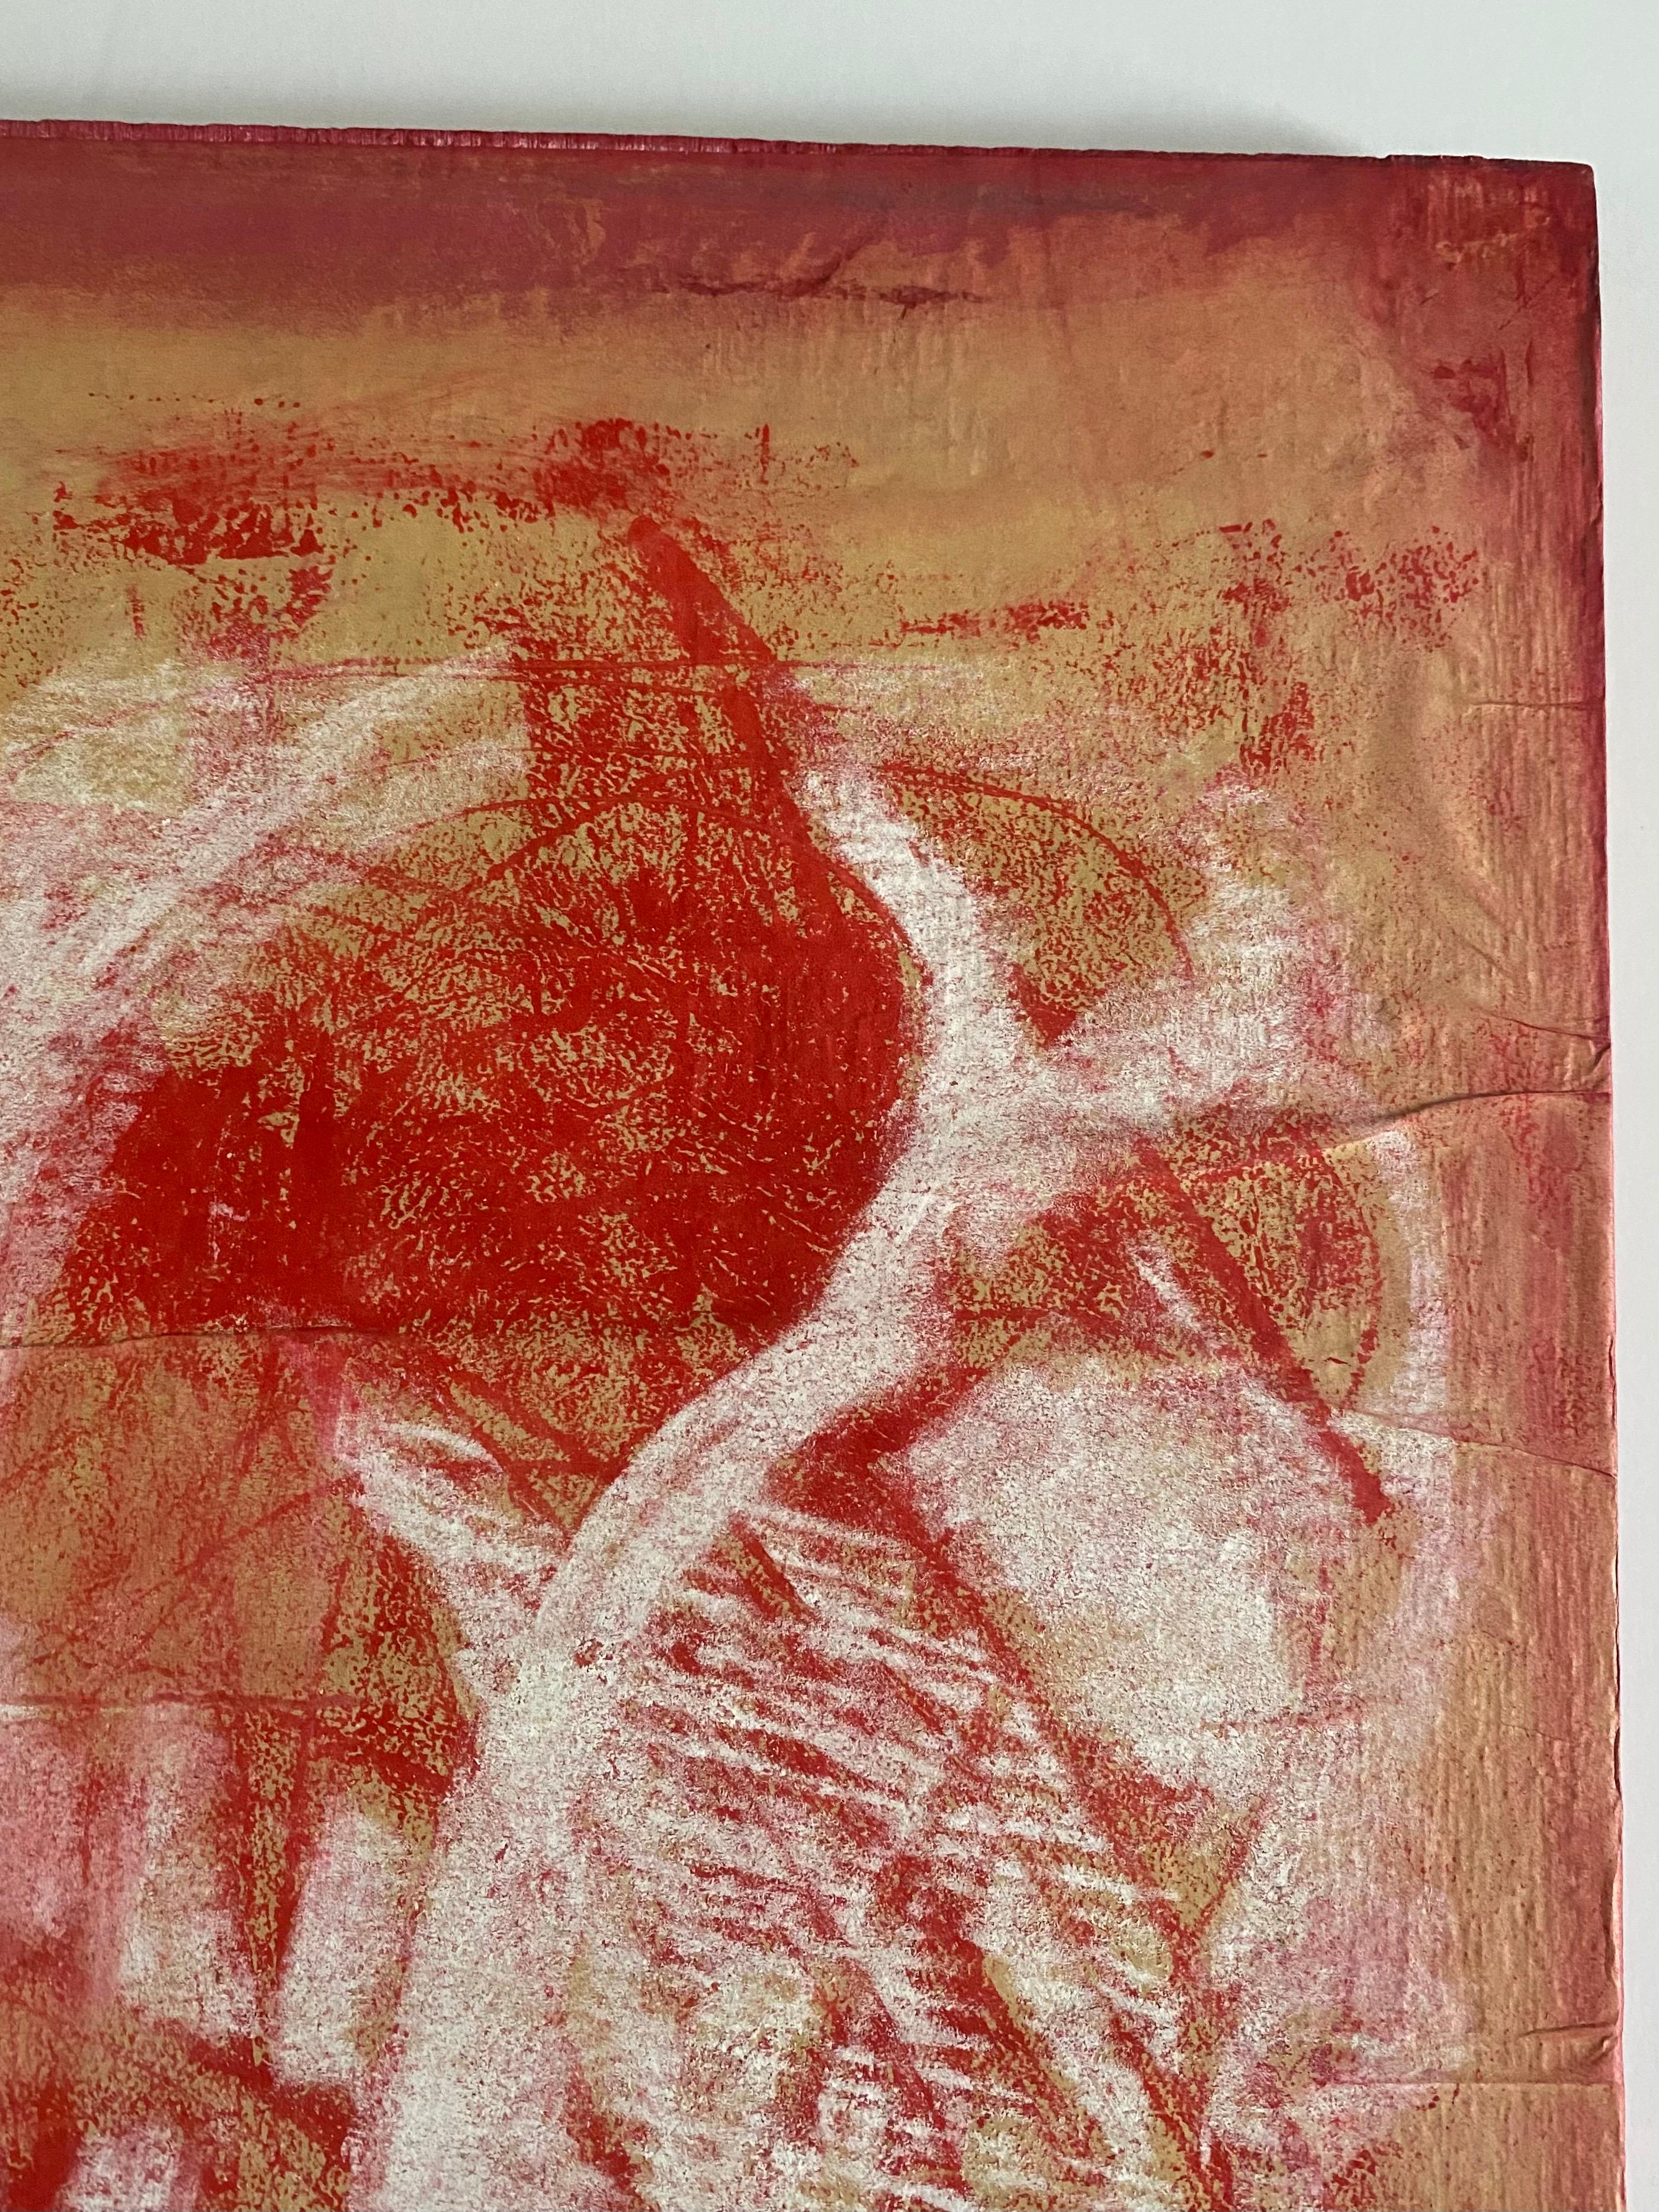 Karen Gibbings
Platz, 2007
Monoprint, Kreide auf Papier, auf Holz montiert 
Maße: 19 x 17 Zoll
48.26 × 43.18 cm
Verso vom Künstler signiert.

Karen Gibbons ist eine in New York lebende Künstlerin. Ihre Arbeiten waren in zahlreichen